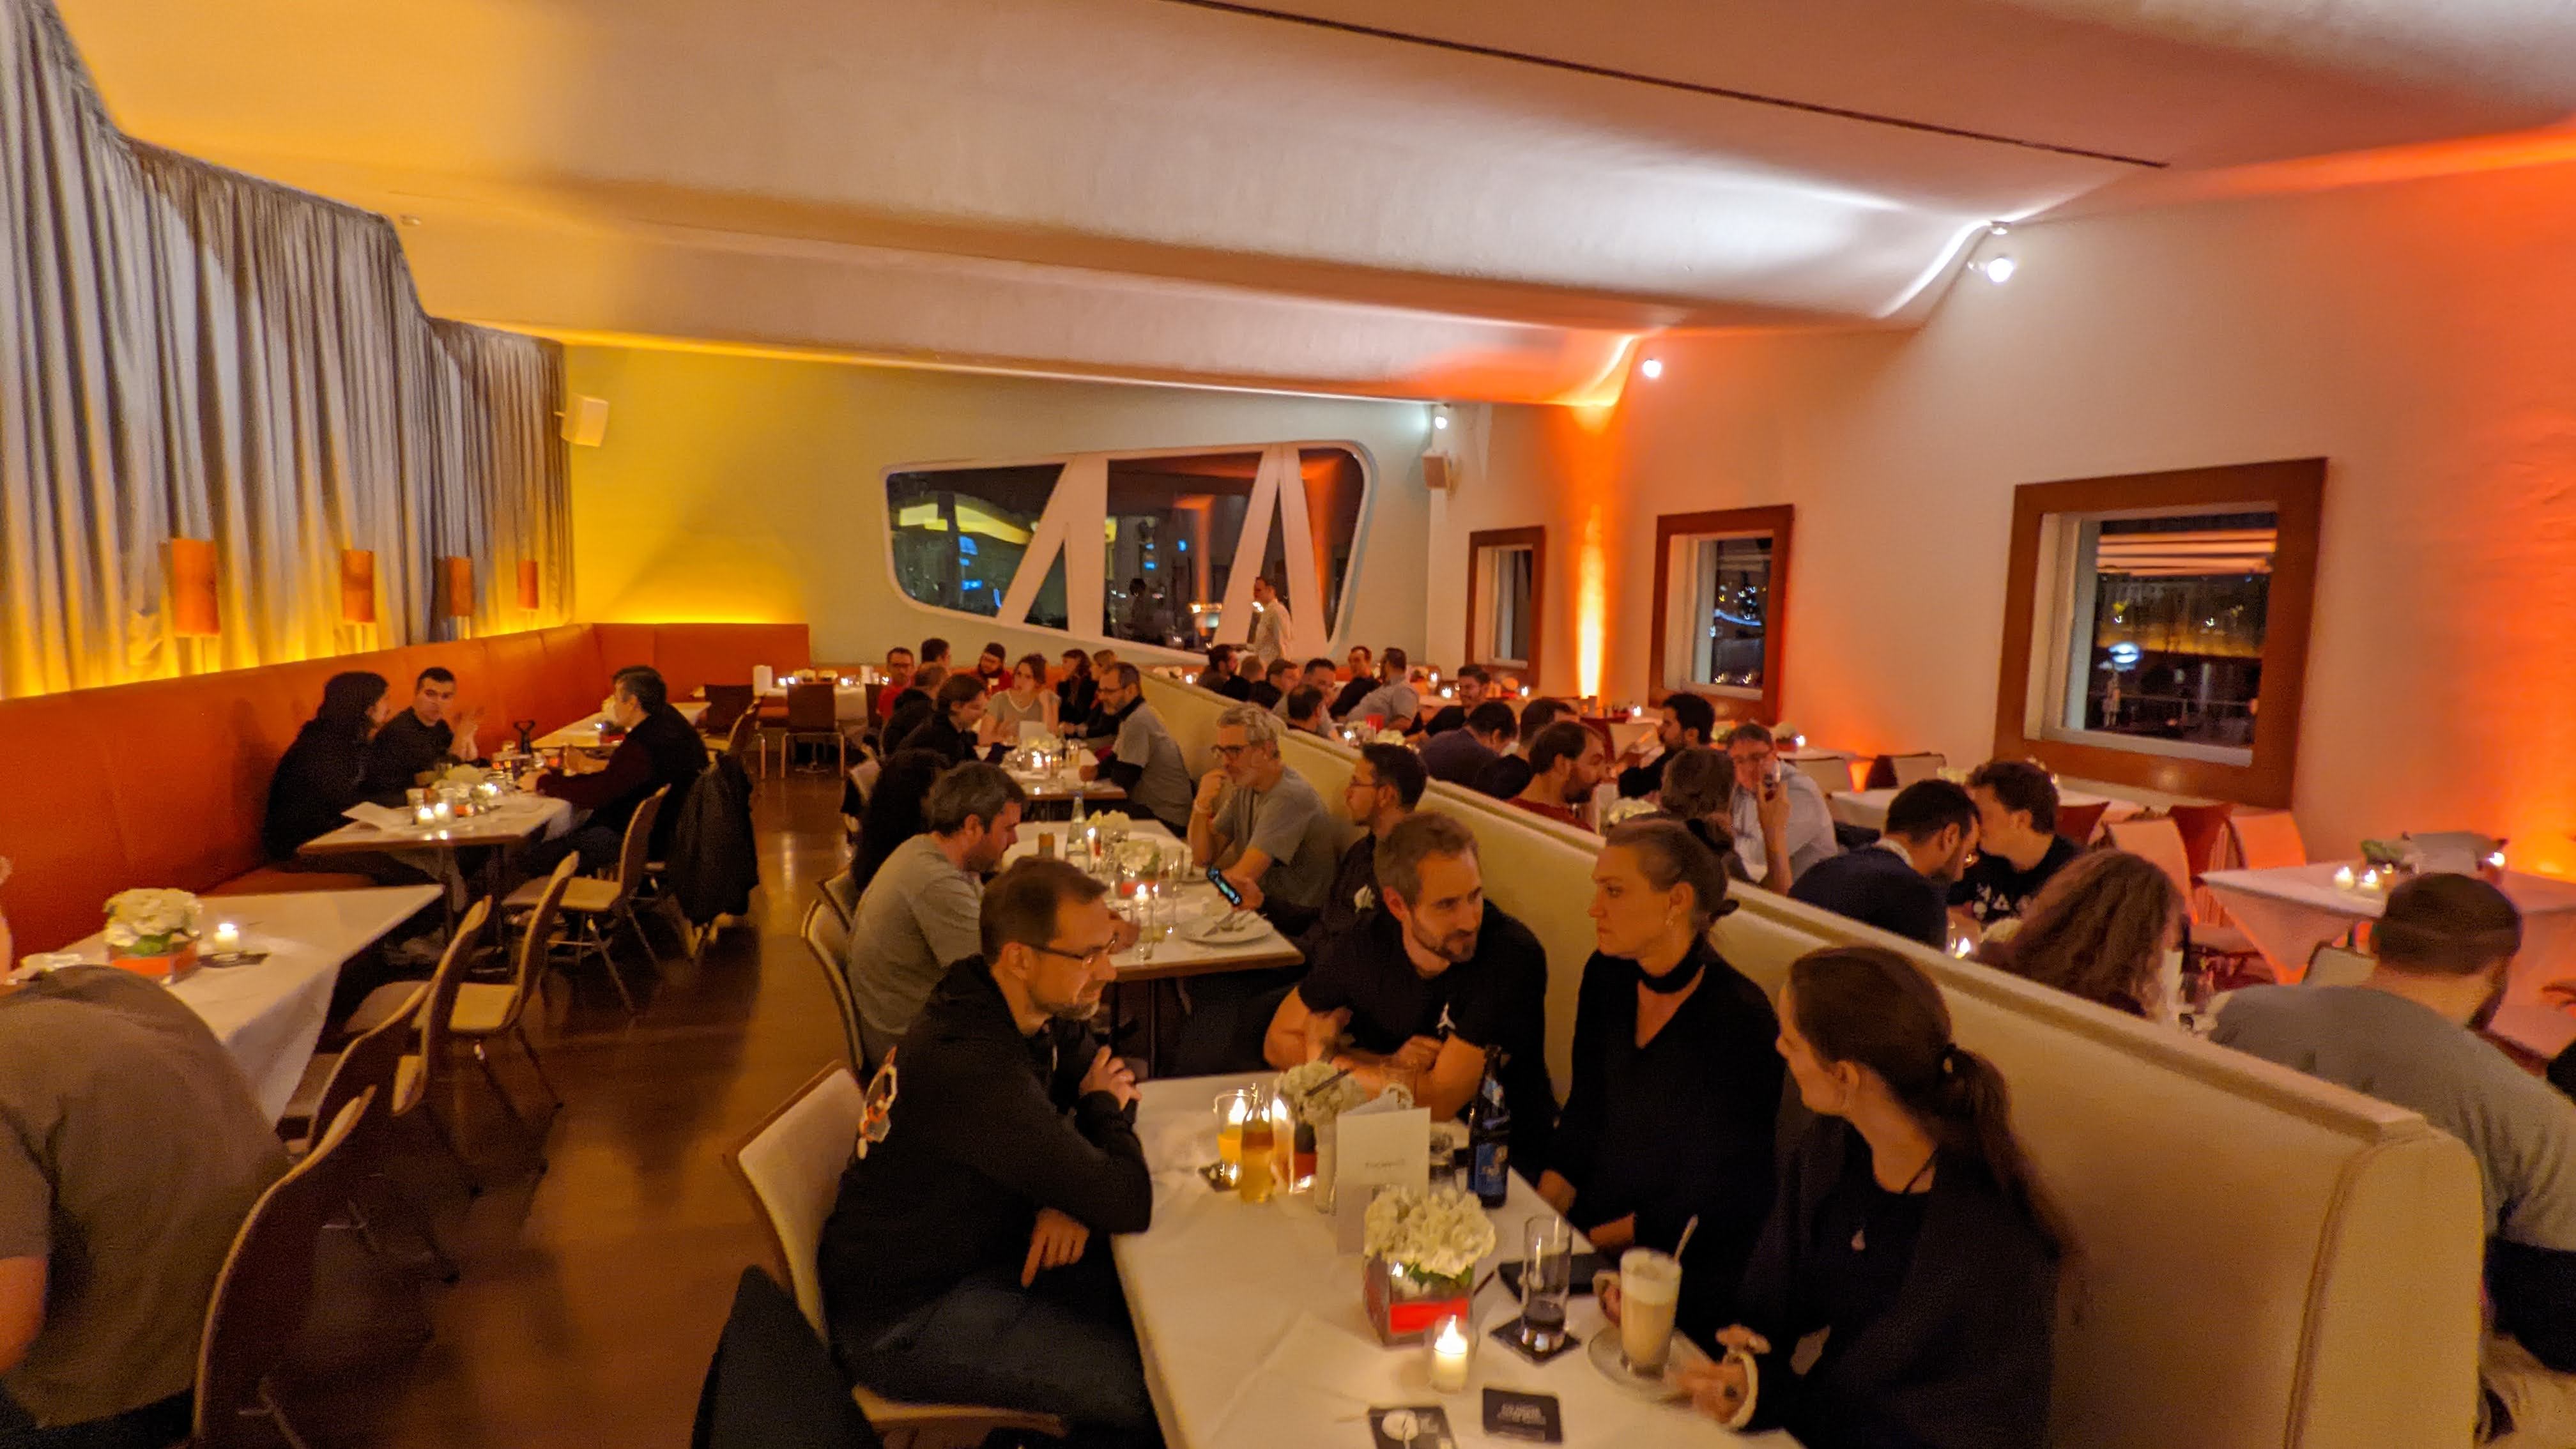 Aftershow party at the Rheinterrassen